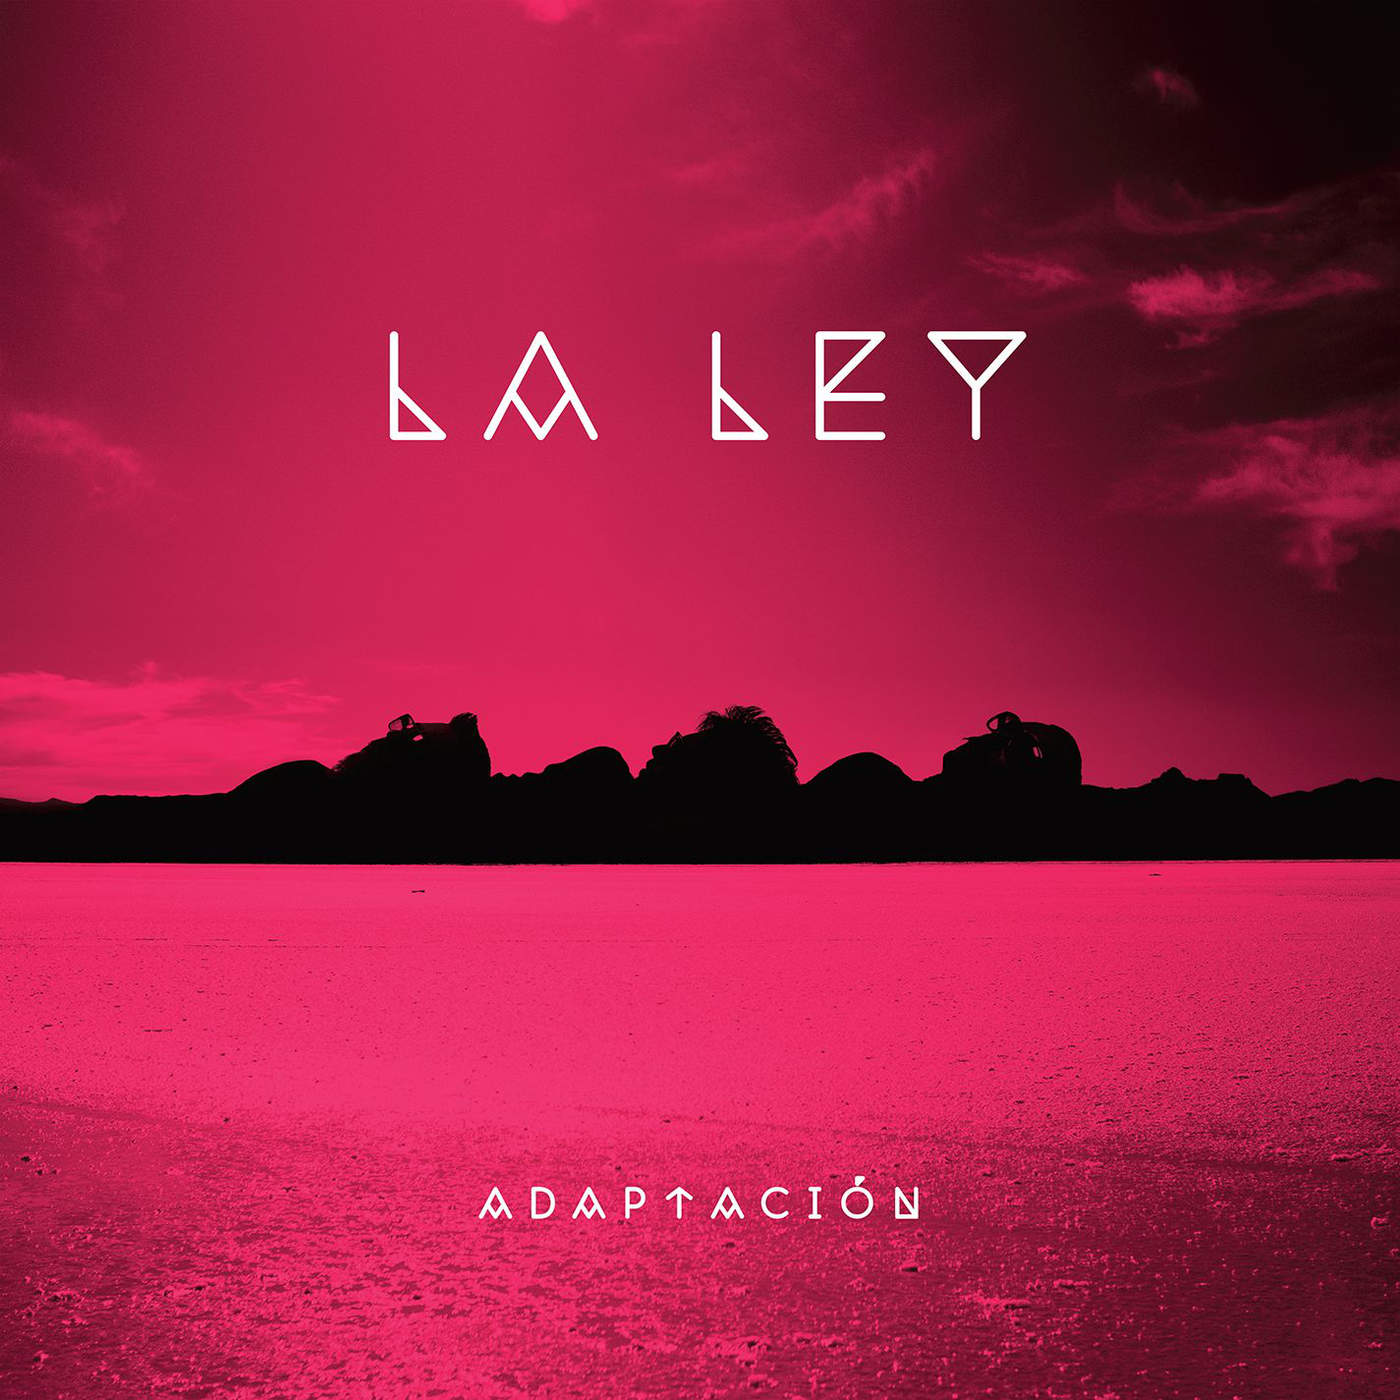 ADAPTACION-LALEY-MEGA